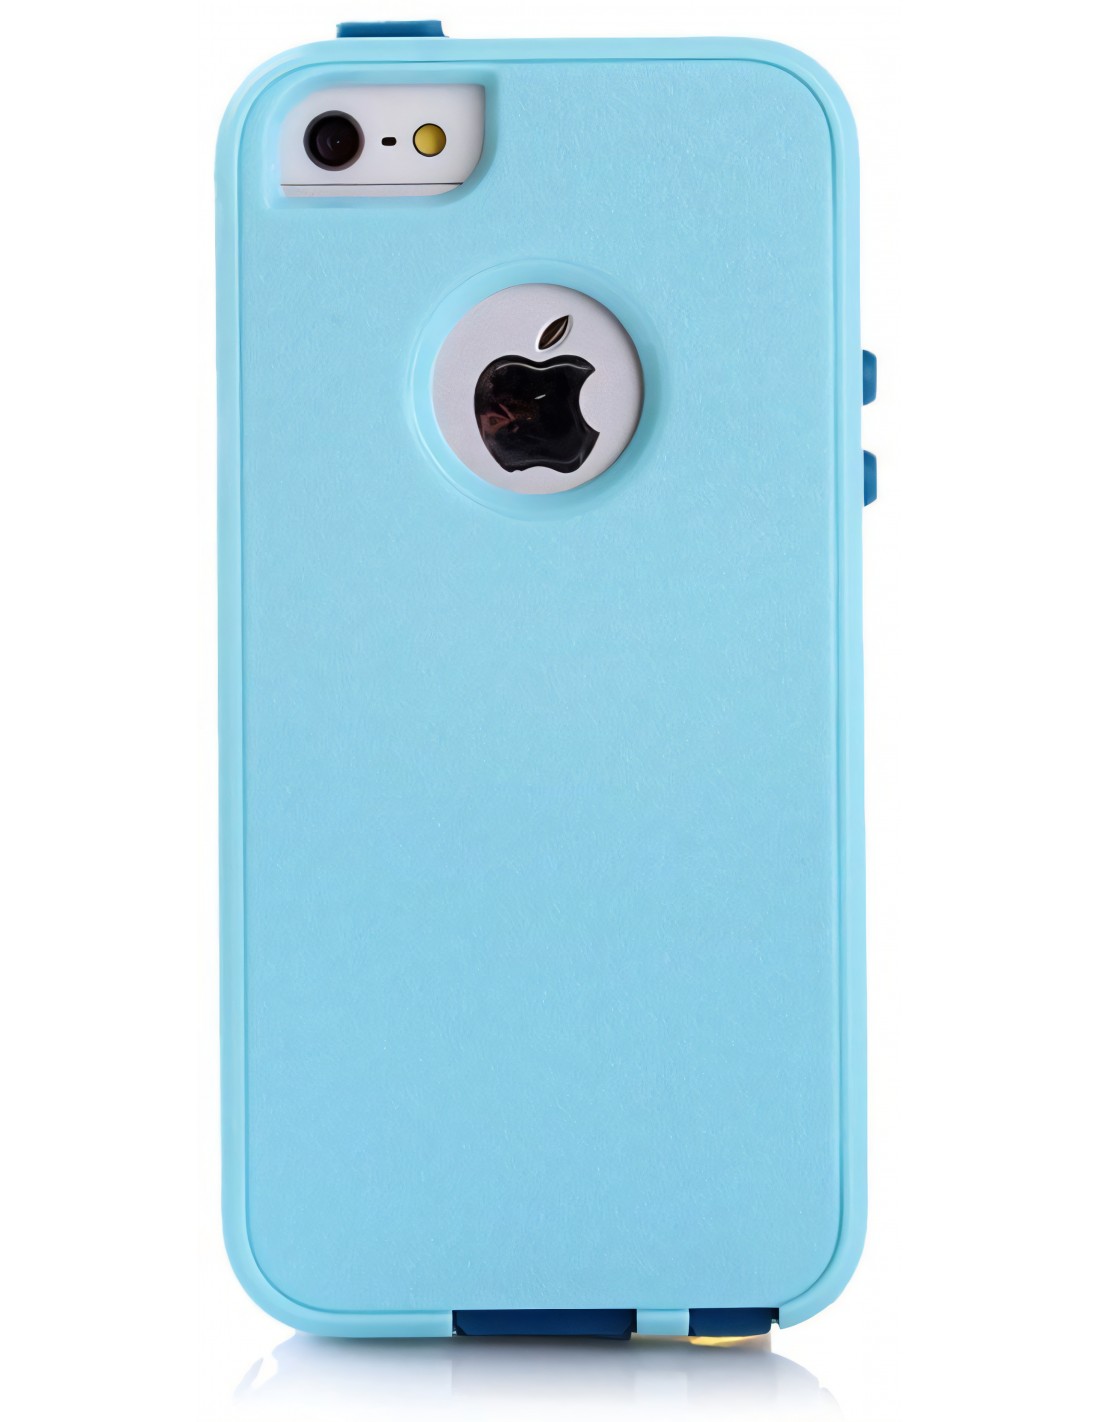 Coque Apple iPhone 5S et 5 Silicone Hybrid résistante Bleu ciel